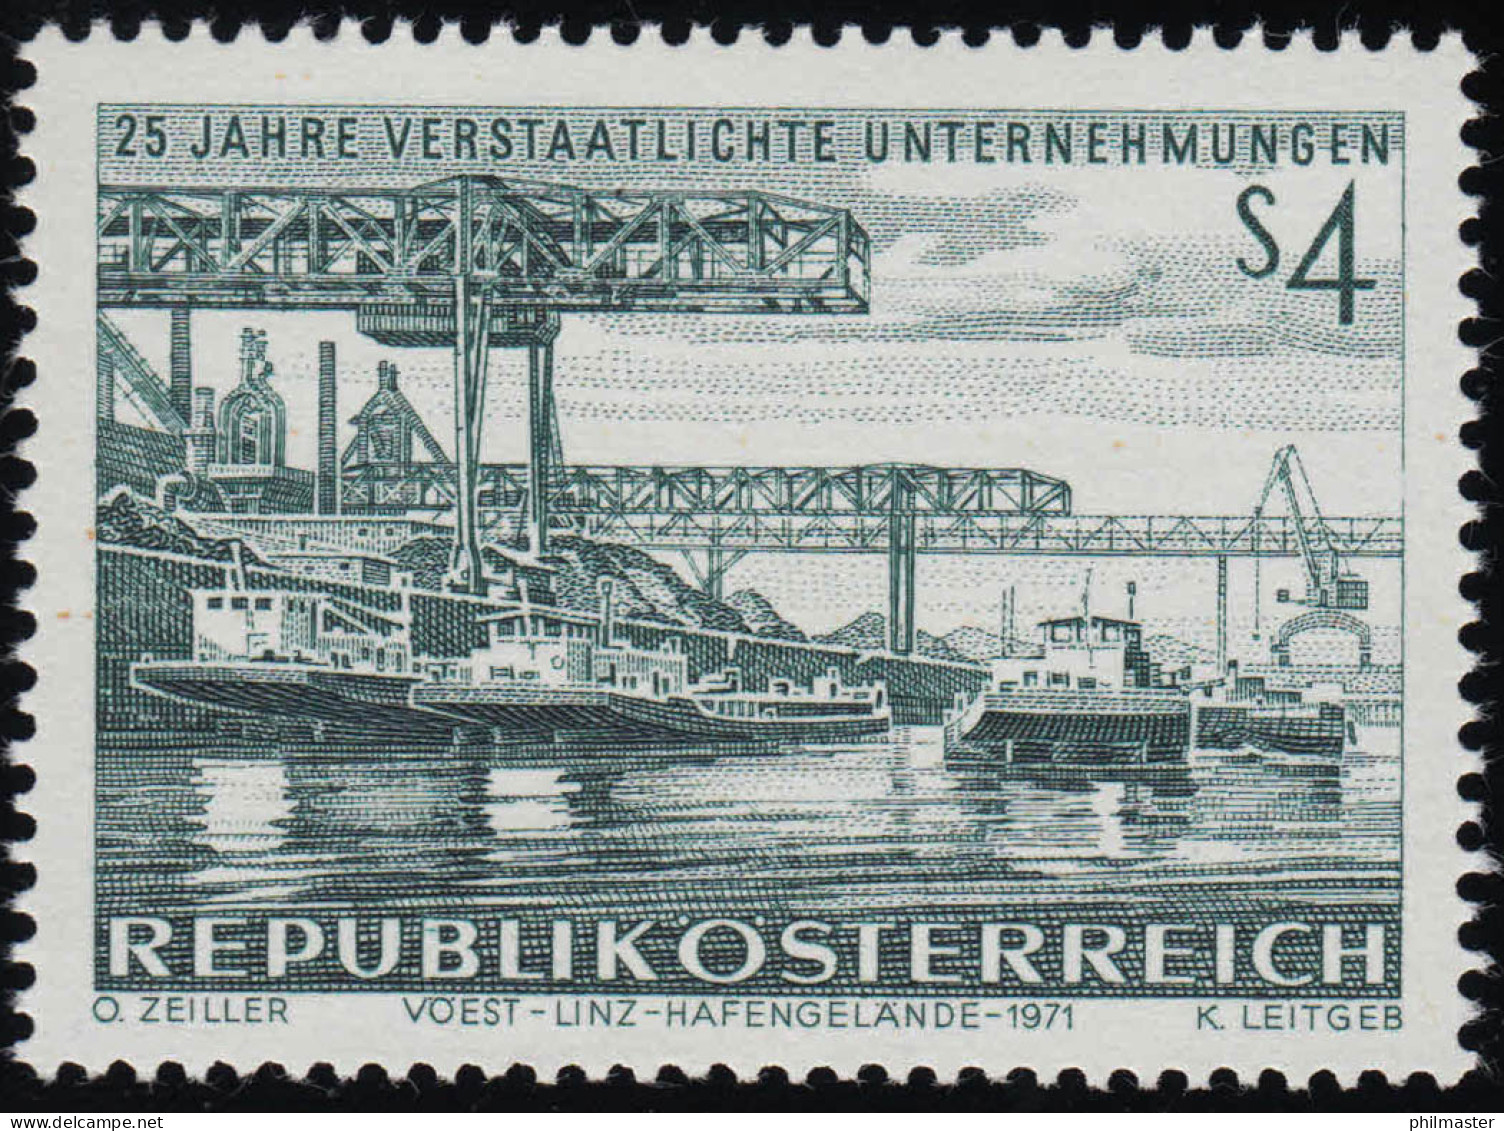 1375 25 J. Verstaatl. Unternehmen, Eisen & Stahlwerk Linz Hafengelände, 4 S, ** - Ungebraucht